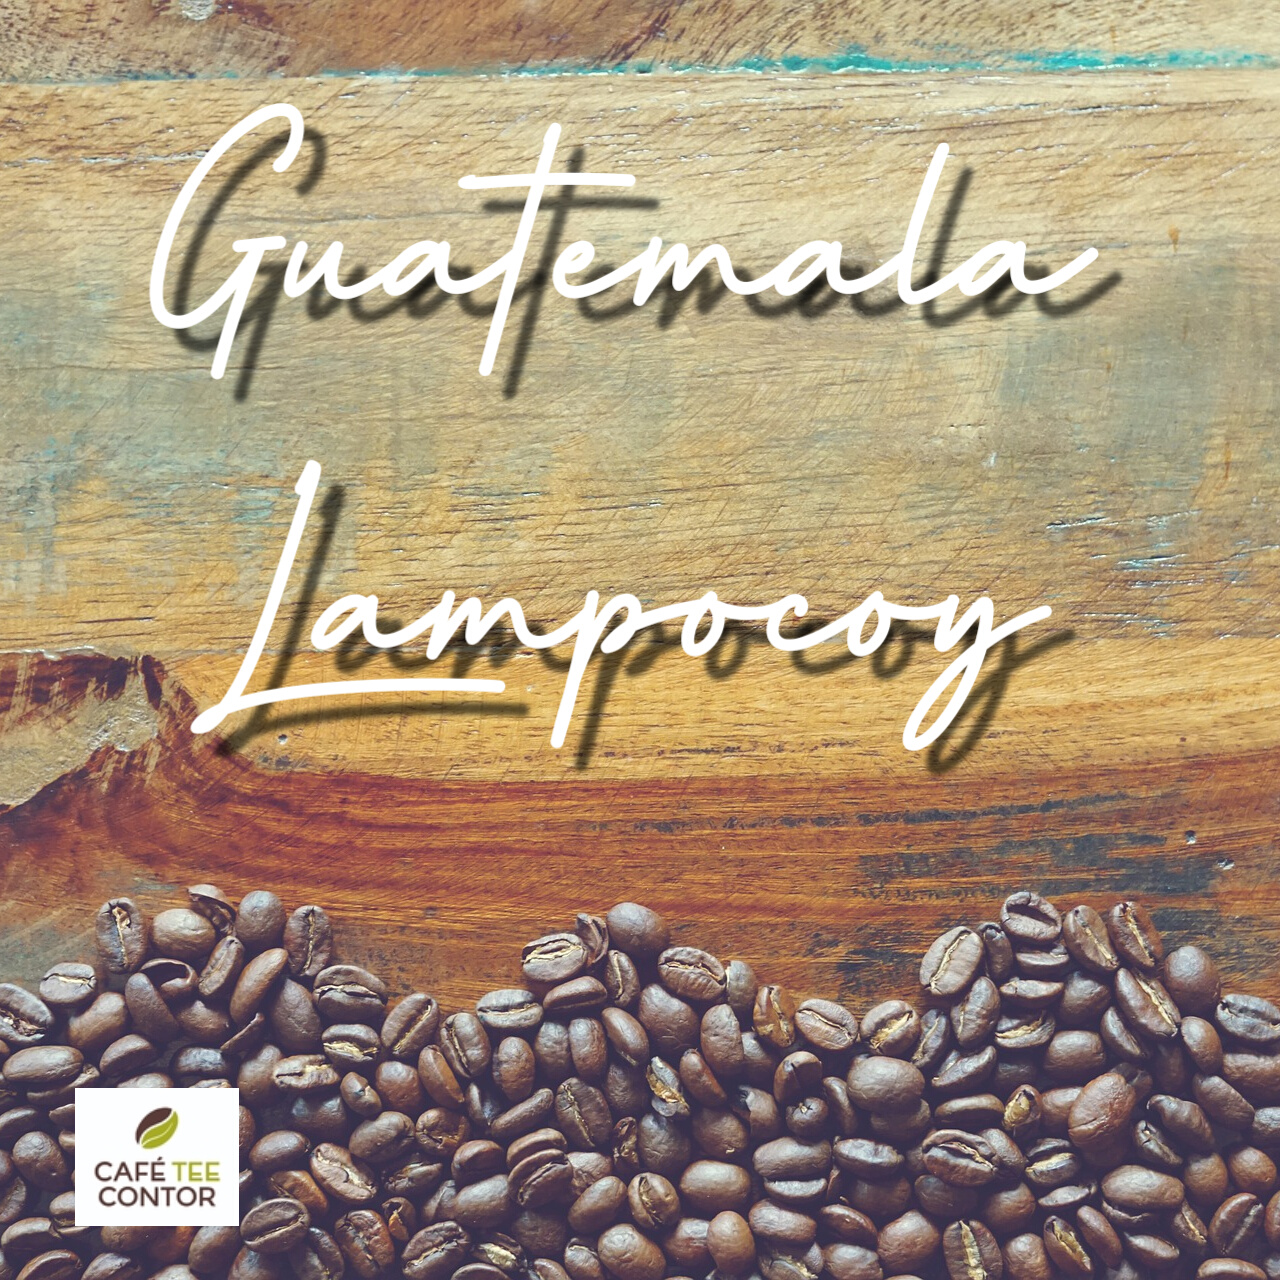 Kaffee Guatemala Lampocoy